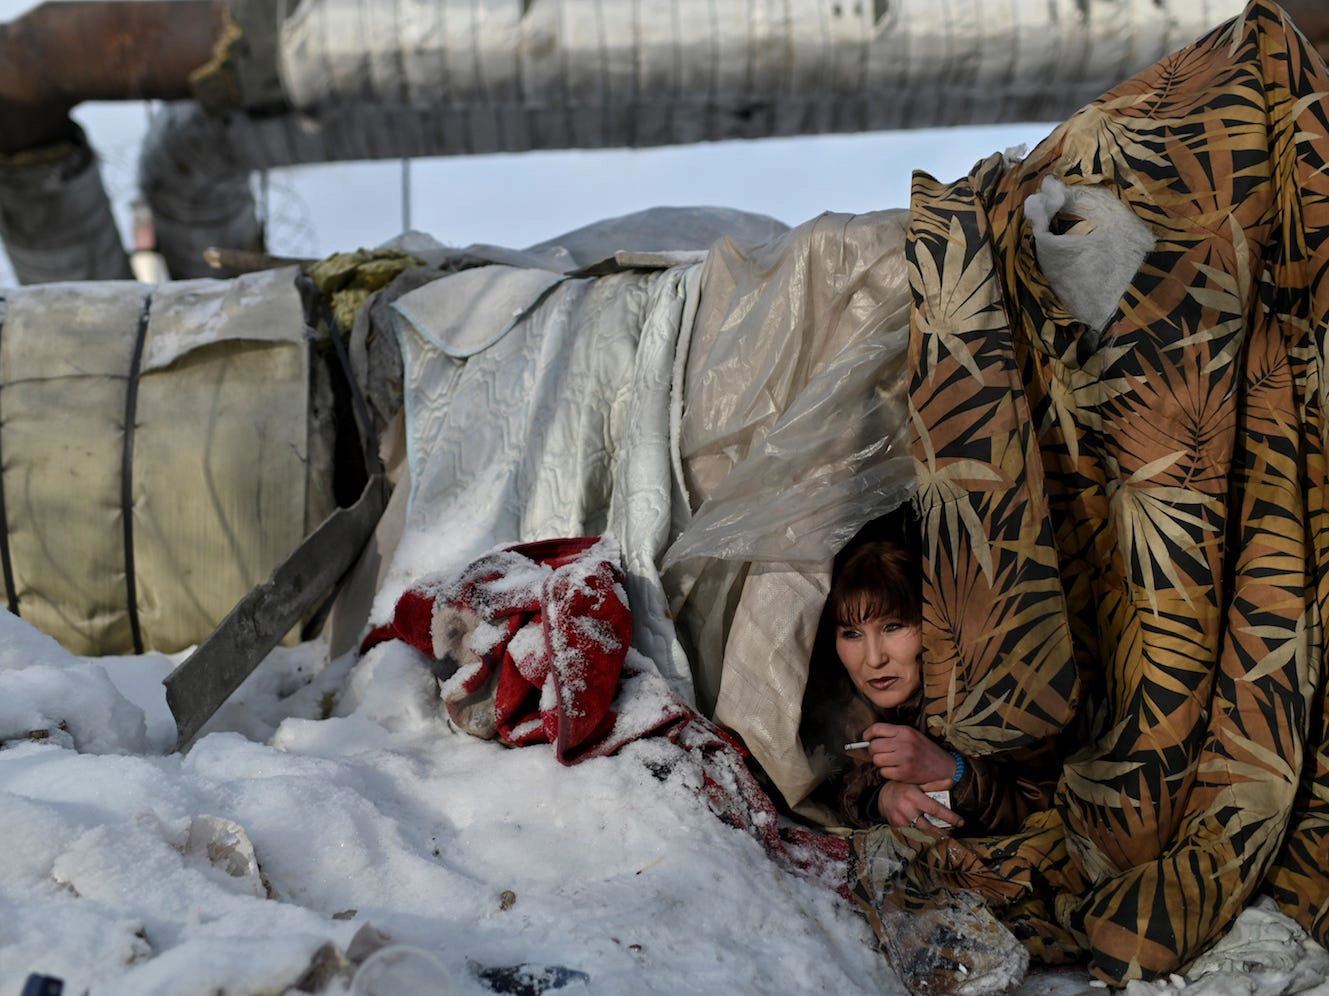 Mùa đông chật vật của người vô gia cư ở nơi lạnh nhất thế giới